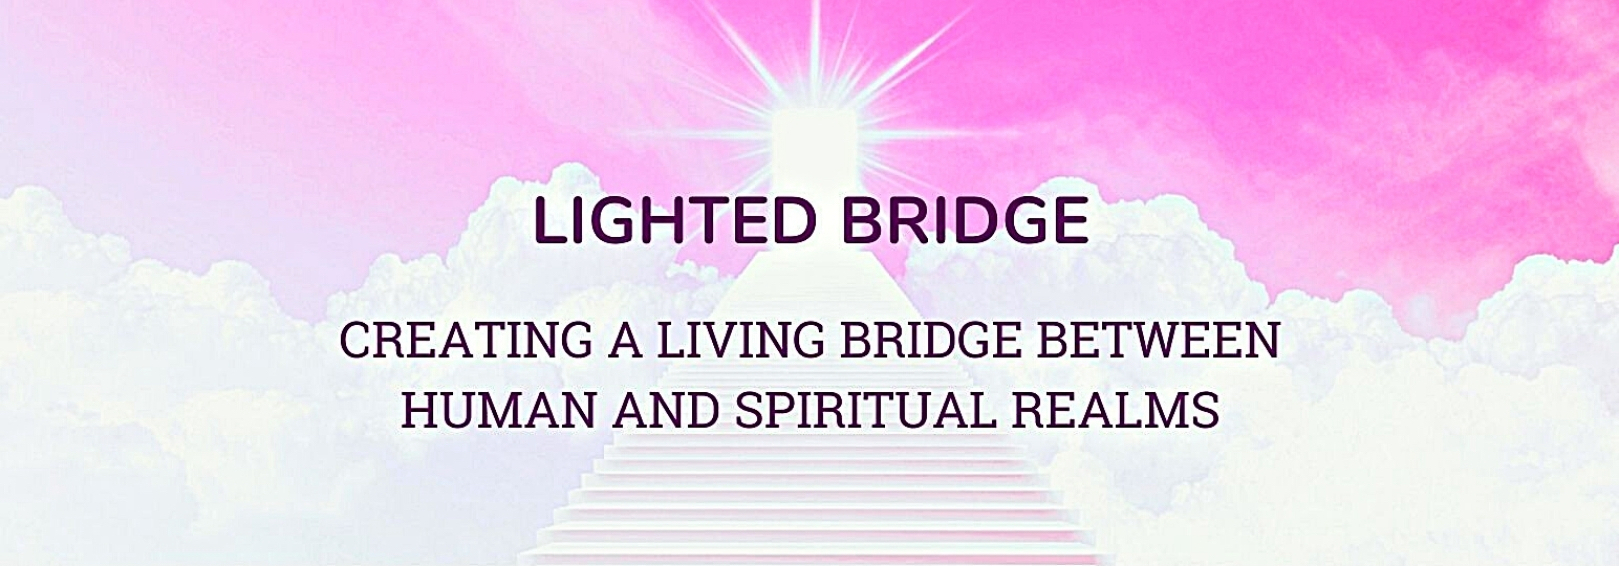 Lighted Bridge: Intro Goes Here